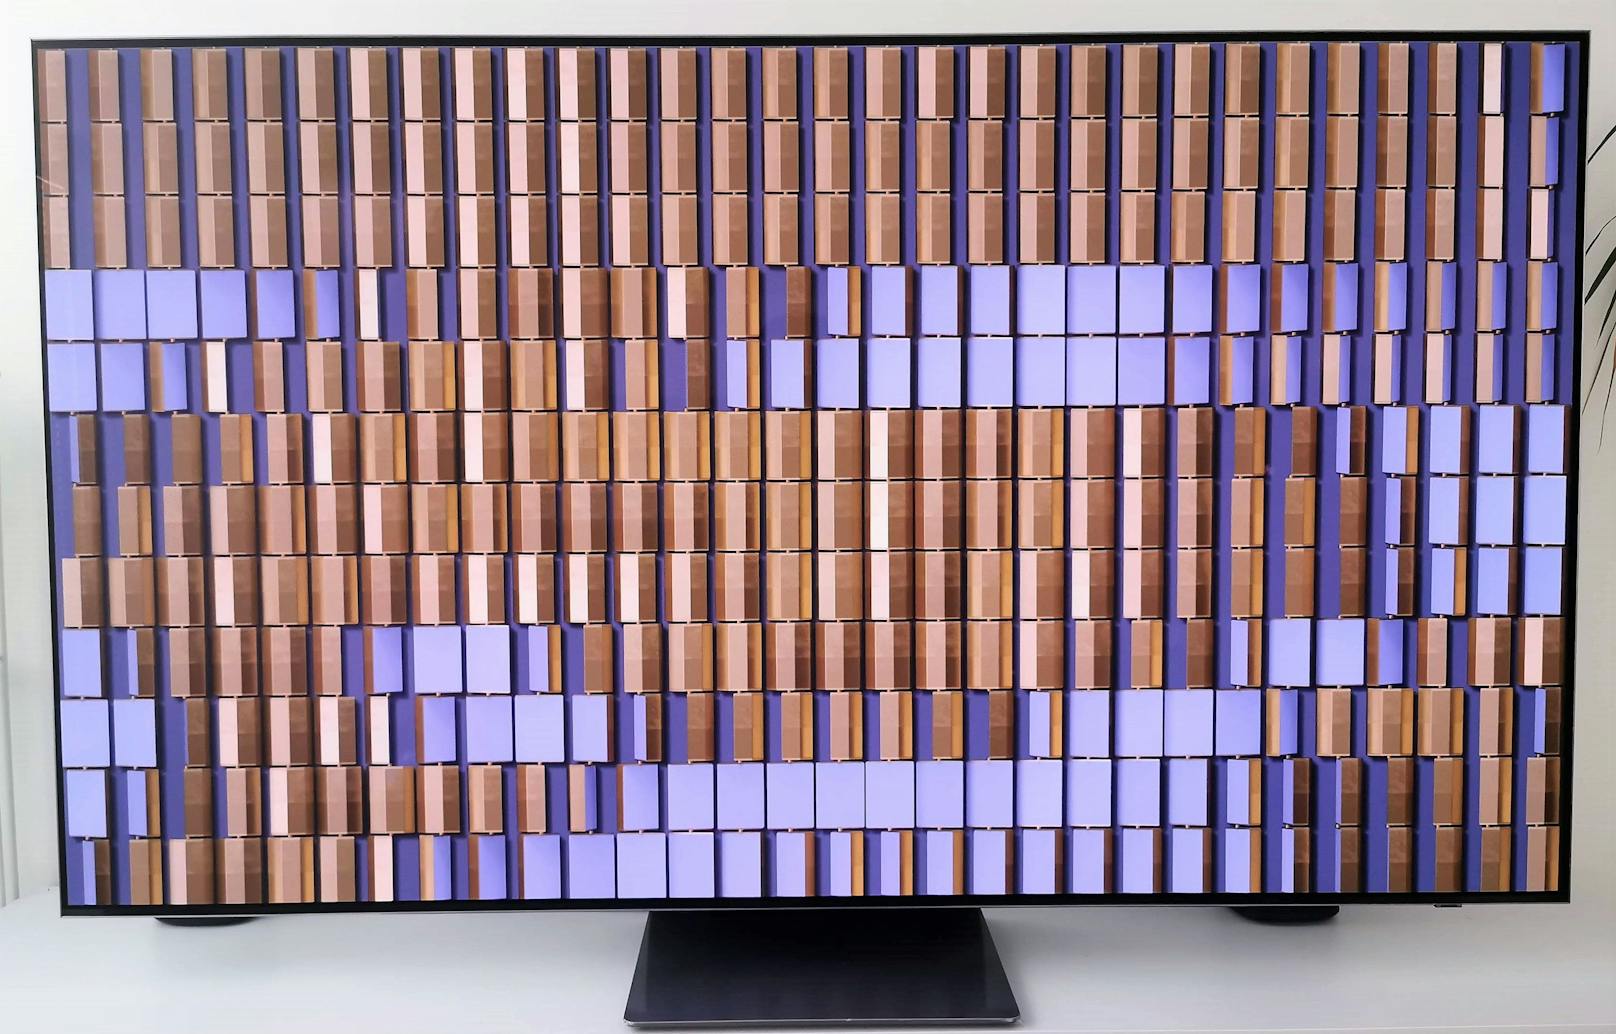 Was im Test des LCD-Fernsehers <a href="https://www.heute.at/s/samsung-qn95b-im-test-bestleistung-zum-bestpreis-100212300">für mächtig Aufsehen gesorgt</a> hatte, will Samsung nun auch im OLED-Segment wiederholen. Im "<em>Heute</em>"-Test liegt dazu der 65 Zoll große OLED-TV S95B vor, der ein QD-OLED-TV ist.